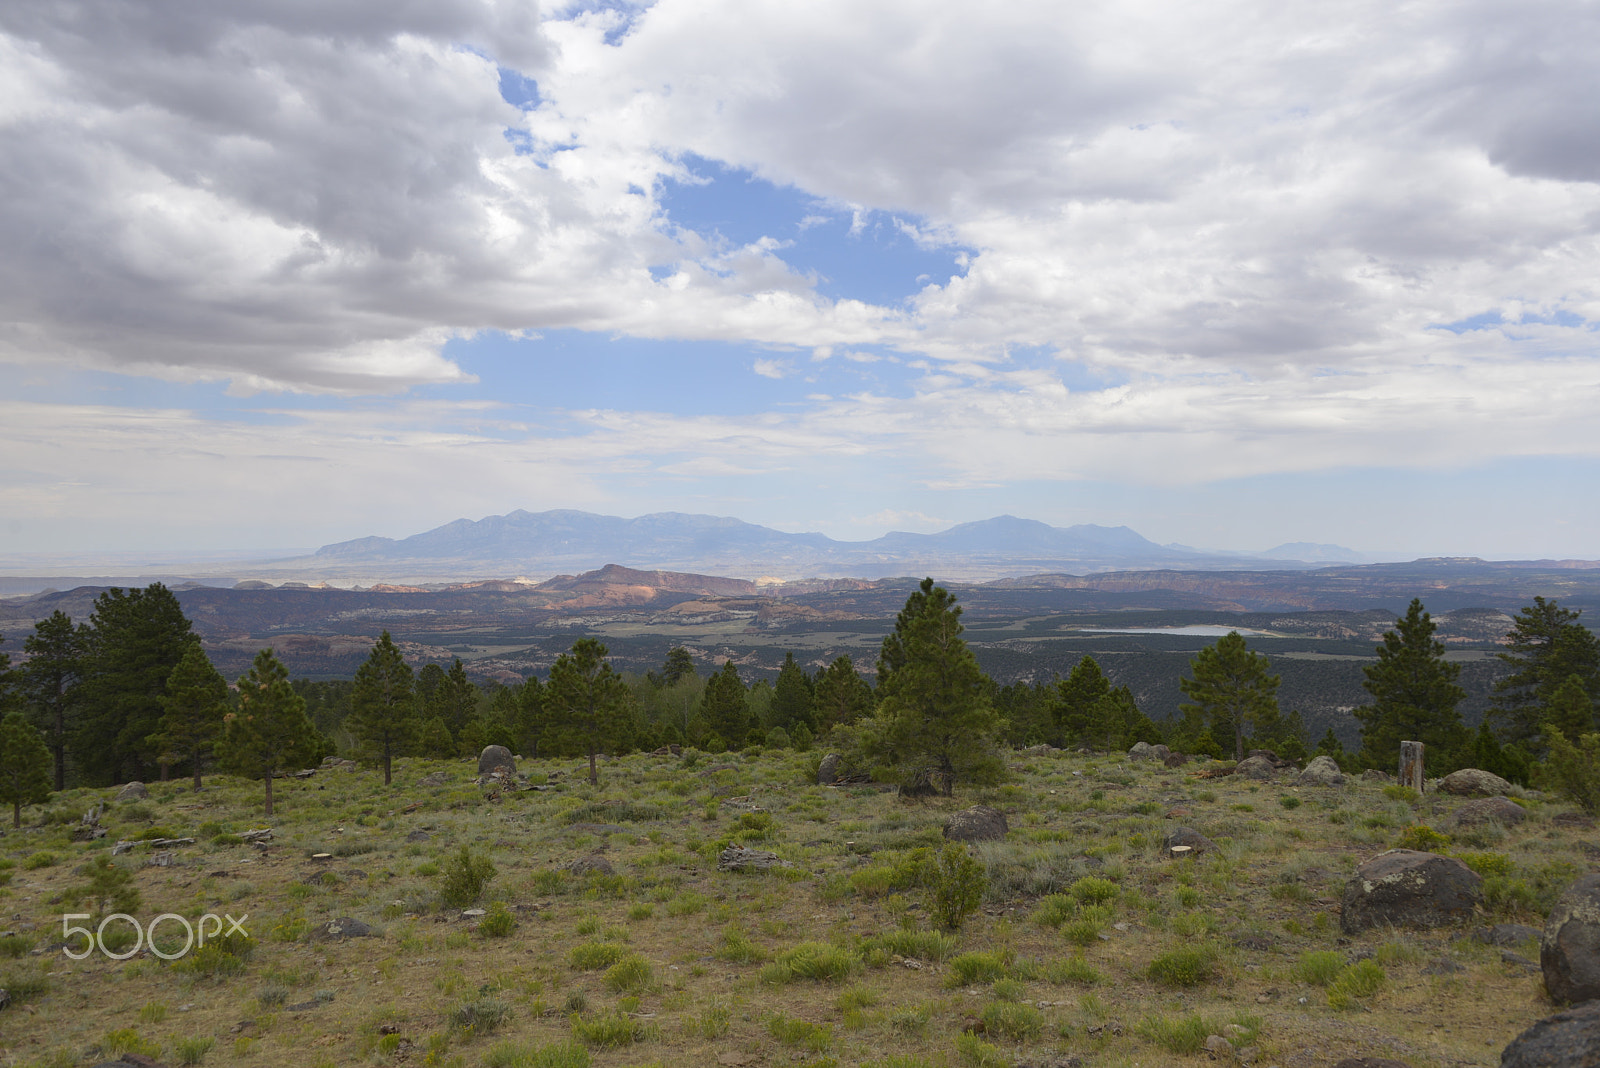 Nikon AF-S Nikkor 28-300mm F3.5-5.6G ED VR sample photo. Utah landscape photography